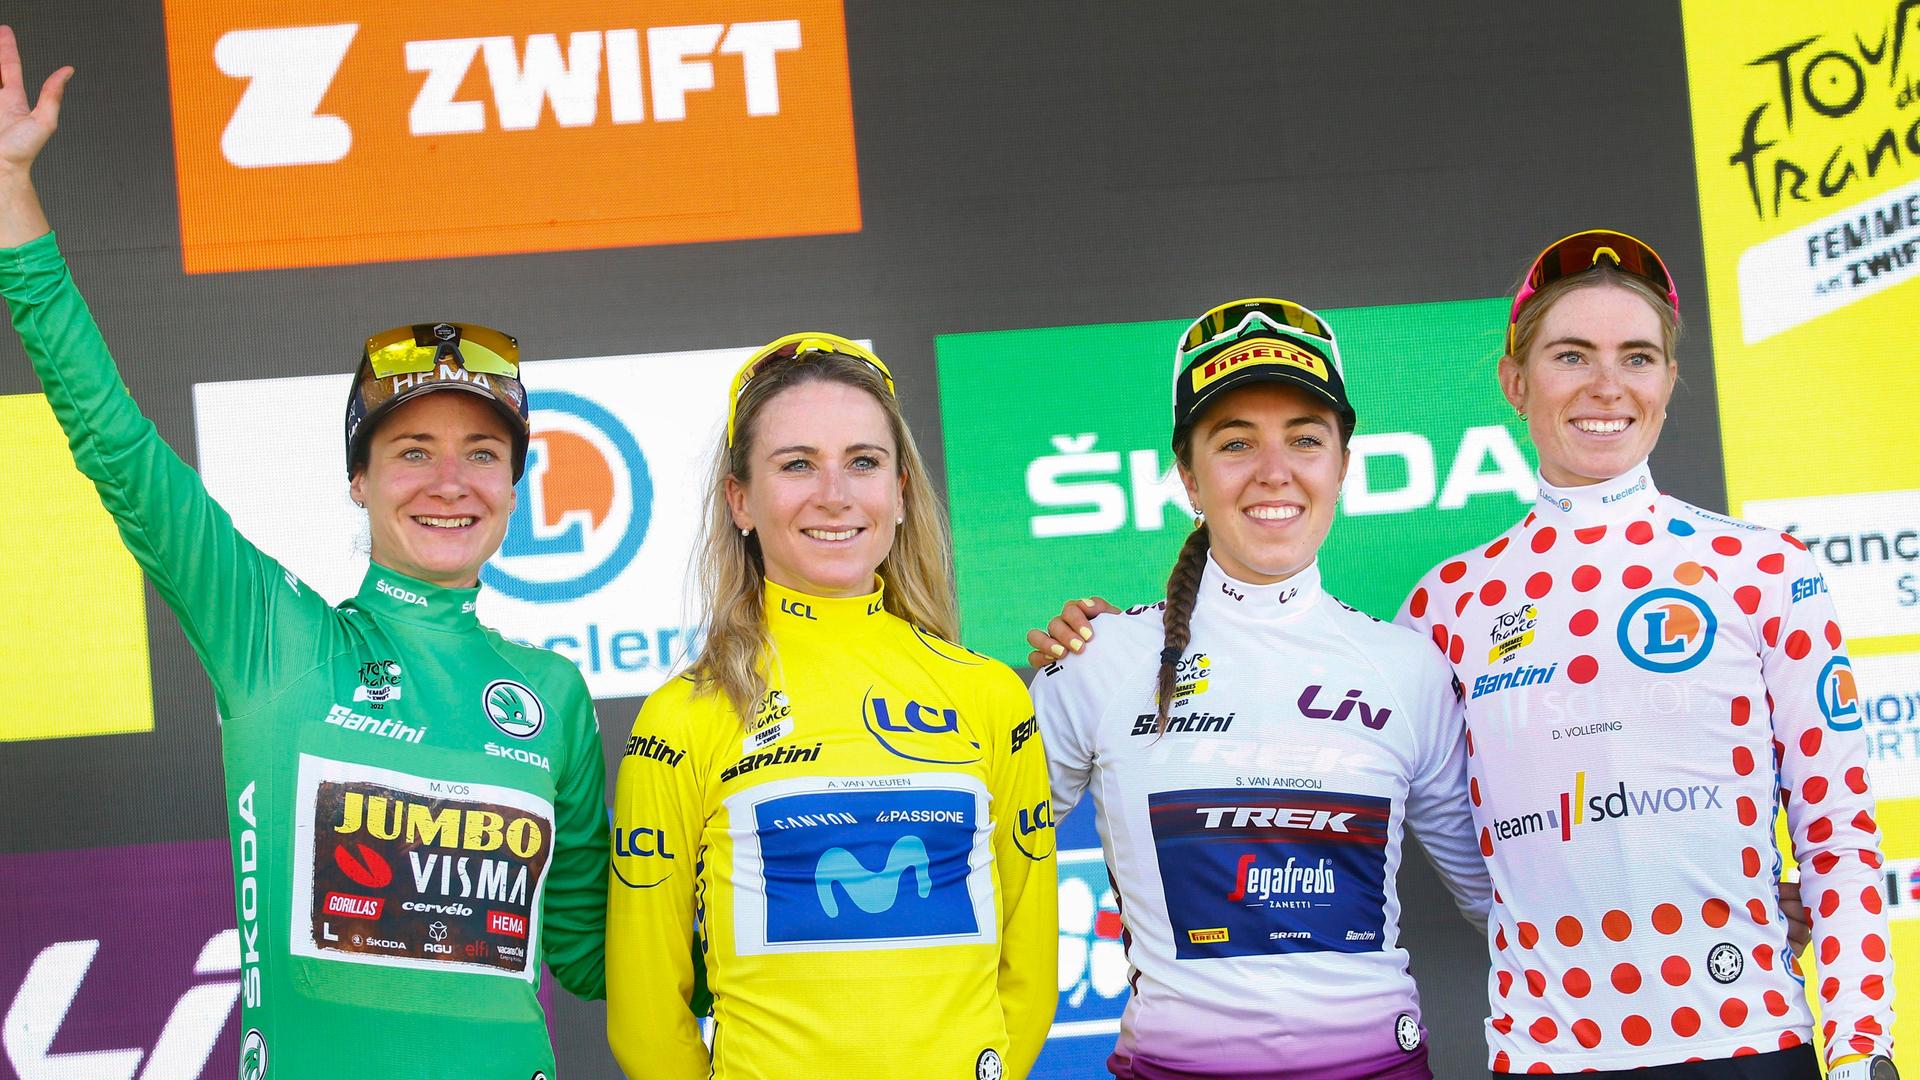 Das Foto zeigt die besten Sportlerinnen bei der Tour de France von den Frauen. Die 2. Frau von links ist Demi Vollering, sie hat das Rad-Rennen gewonnen.